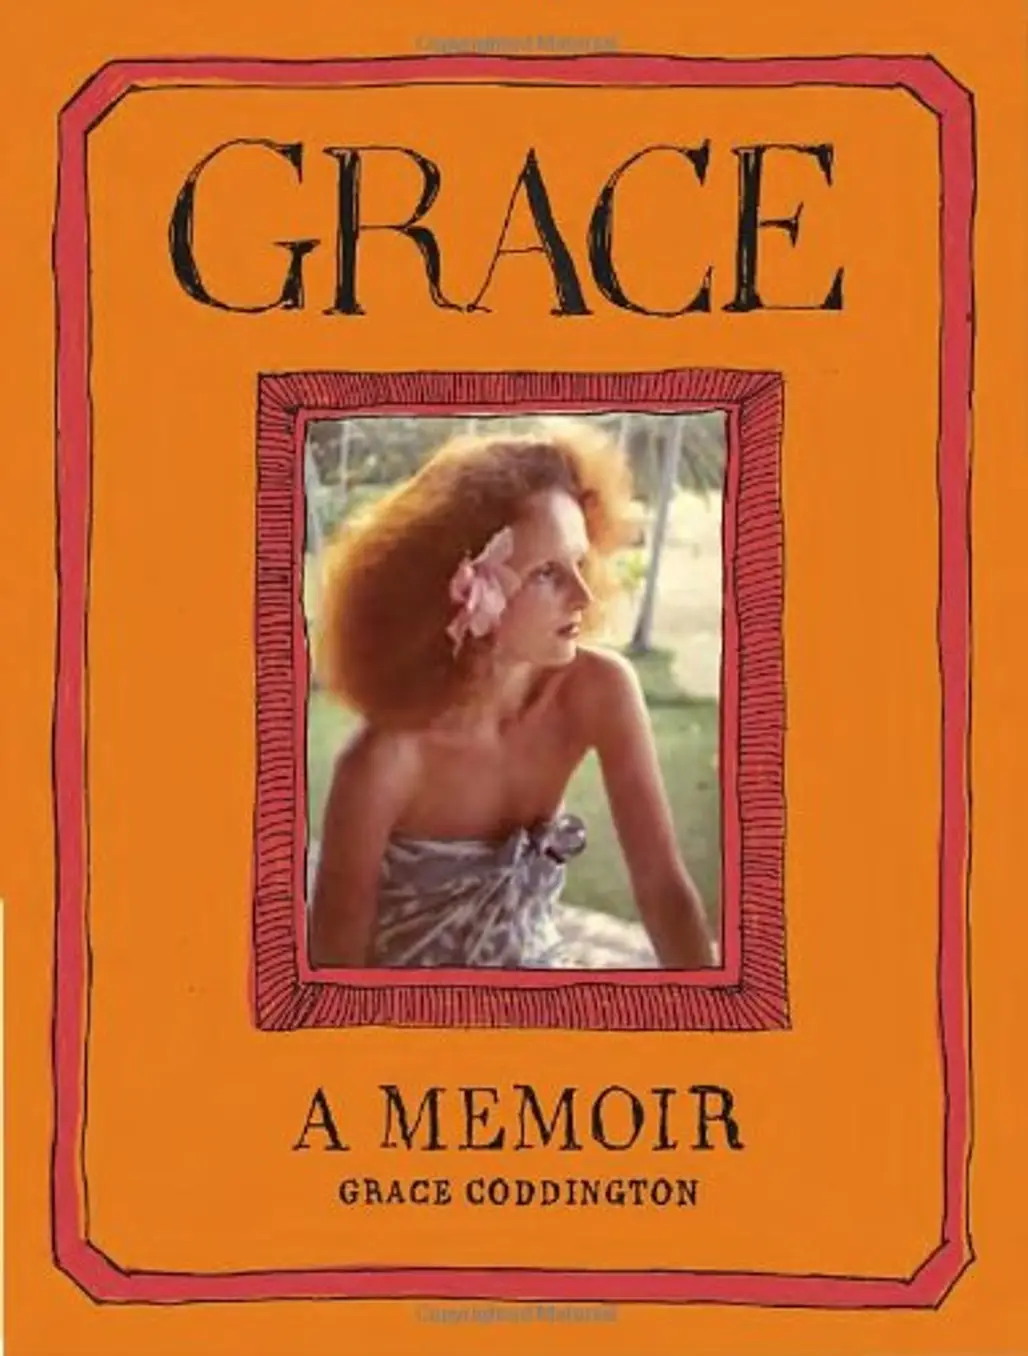 Grace: a Memoir by Grace Coddington